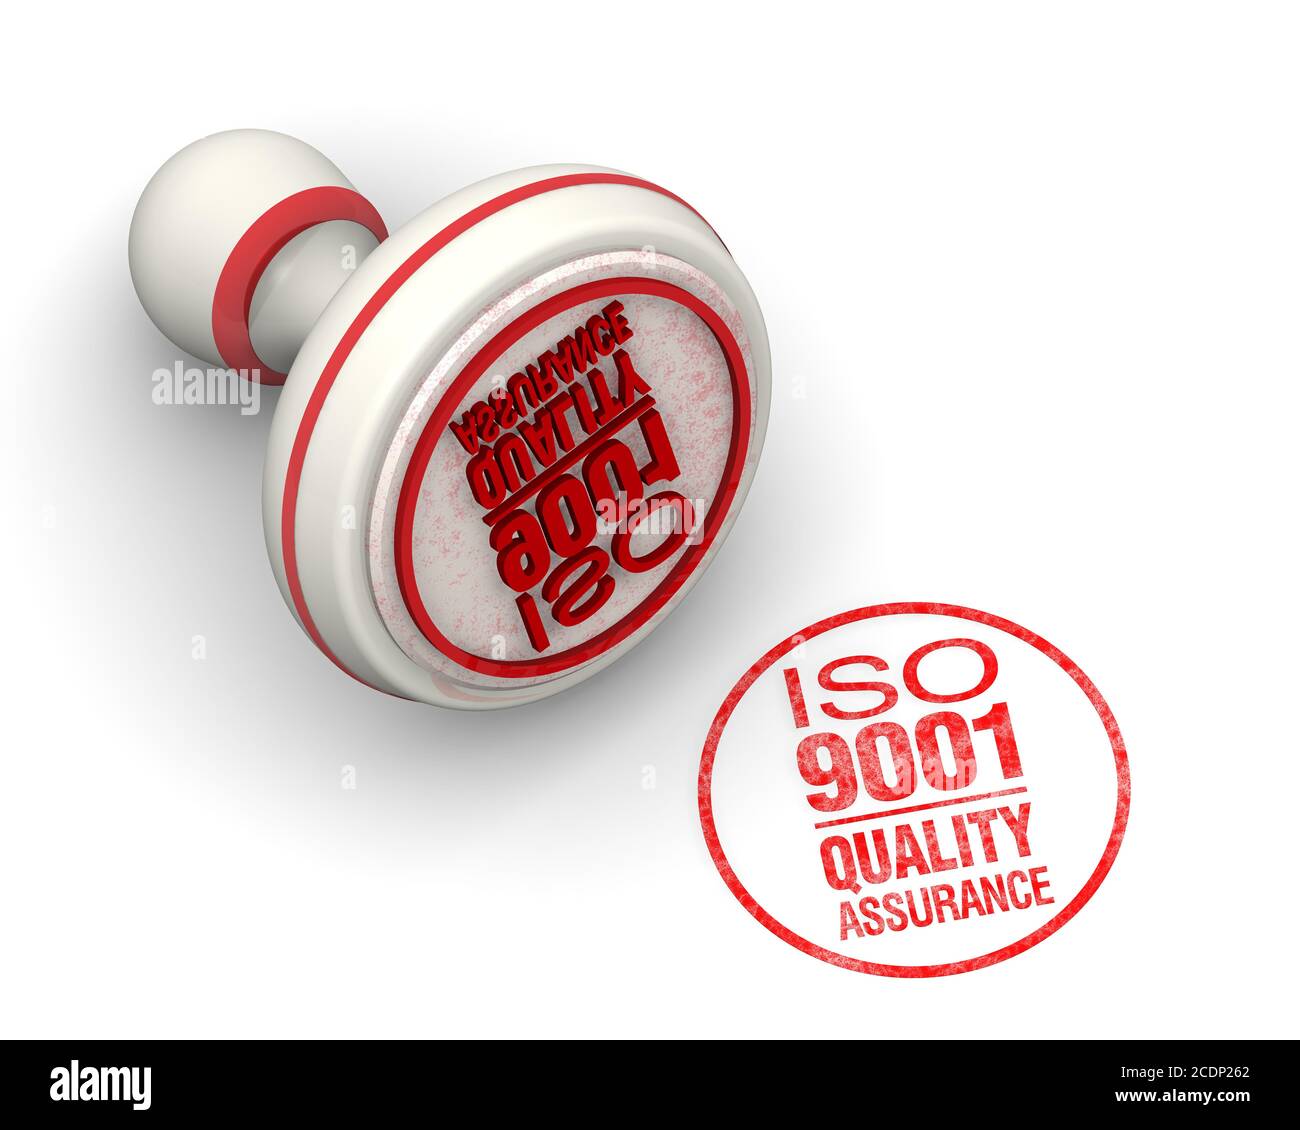 ISO 9001 Qualitätssicherung. Die runde Dichtung und ein Aufdruck. Eine rote runde Dichtung und roter Aufdruck mit Text ISO 9001. QUALITÄTSSICHERUNG auf weißer Oberfläche Stockfoto